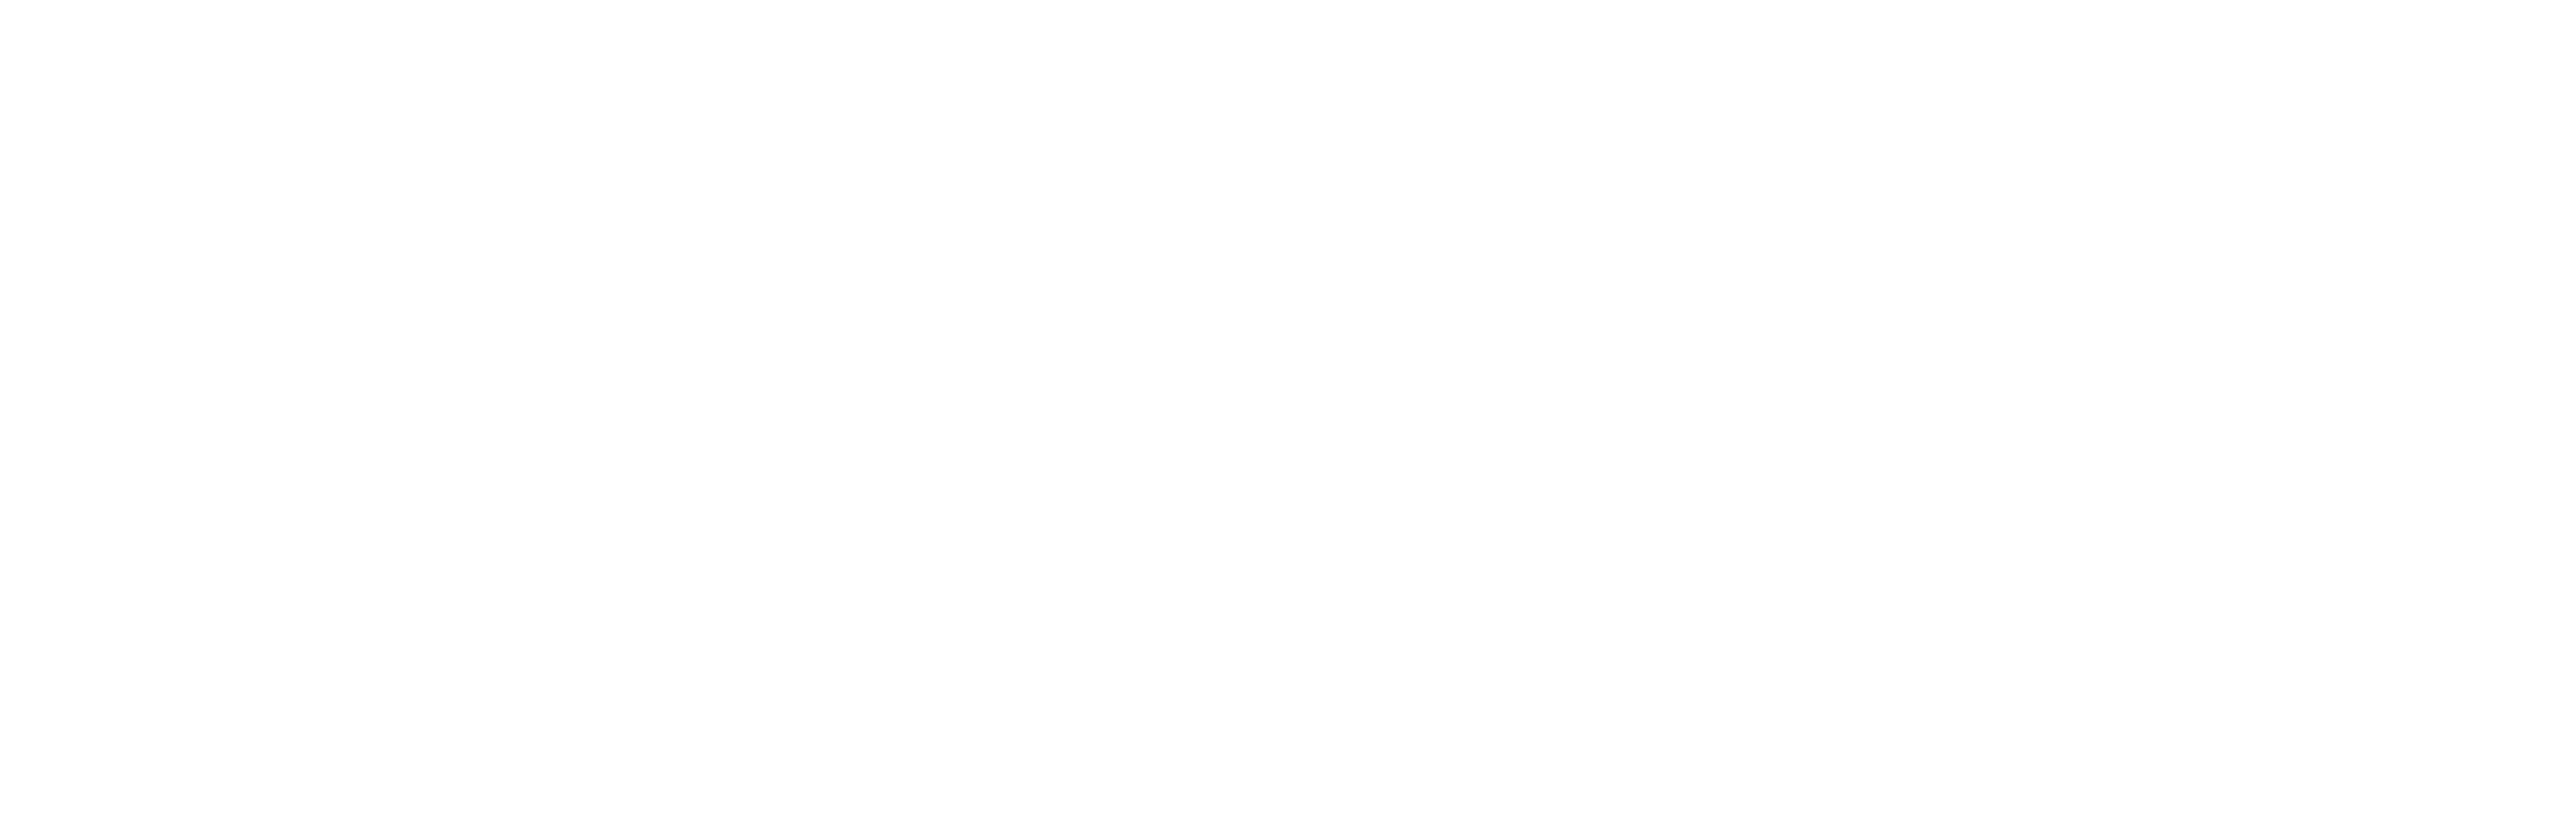 MARVIC logo